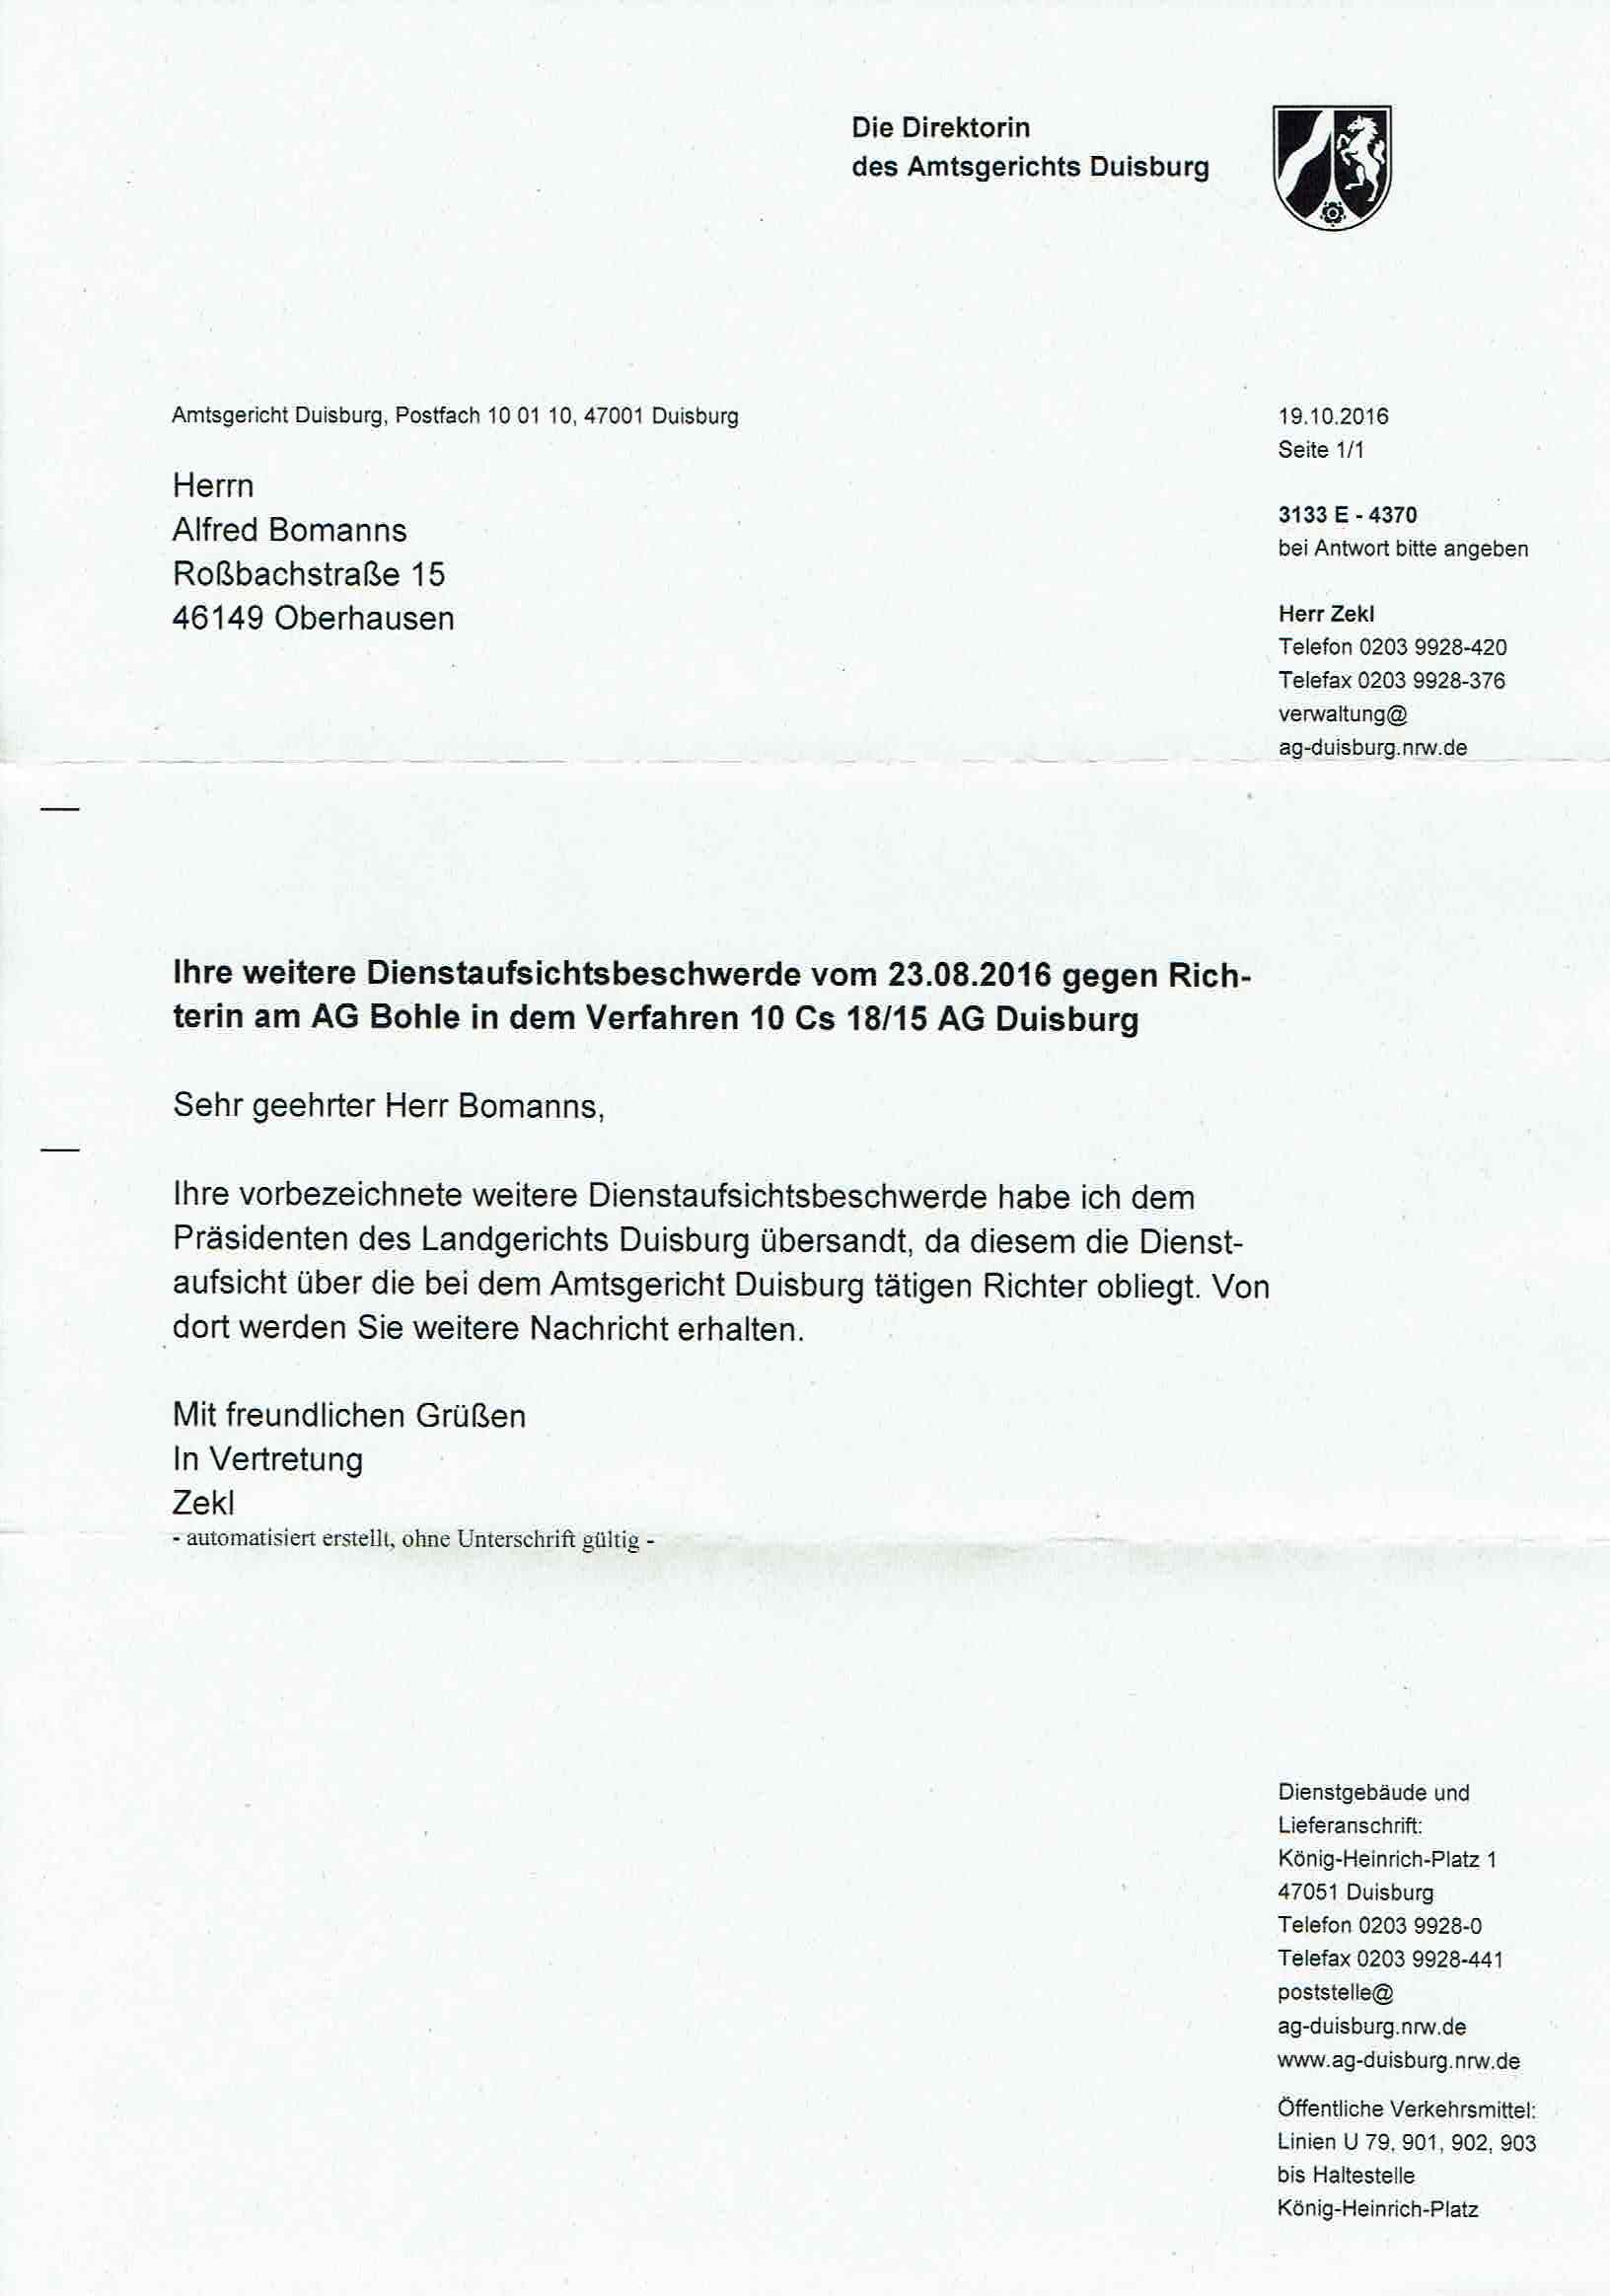 Antwort des Amtsgerichts Duisburg vom 19.10.2016